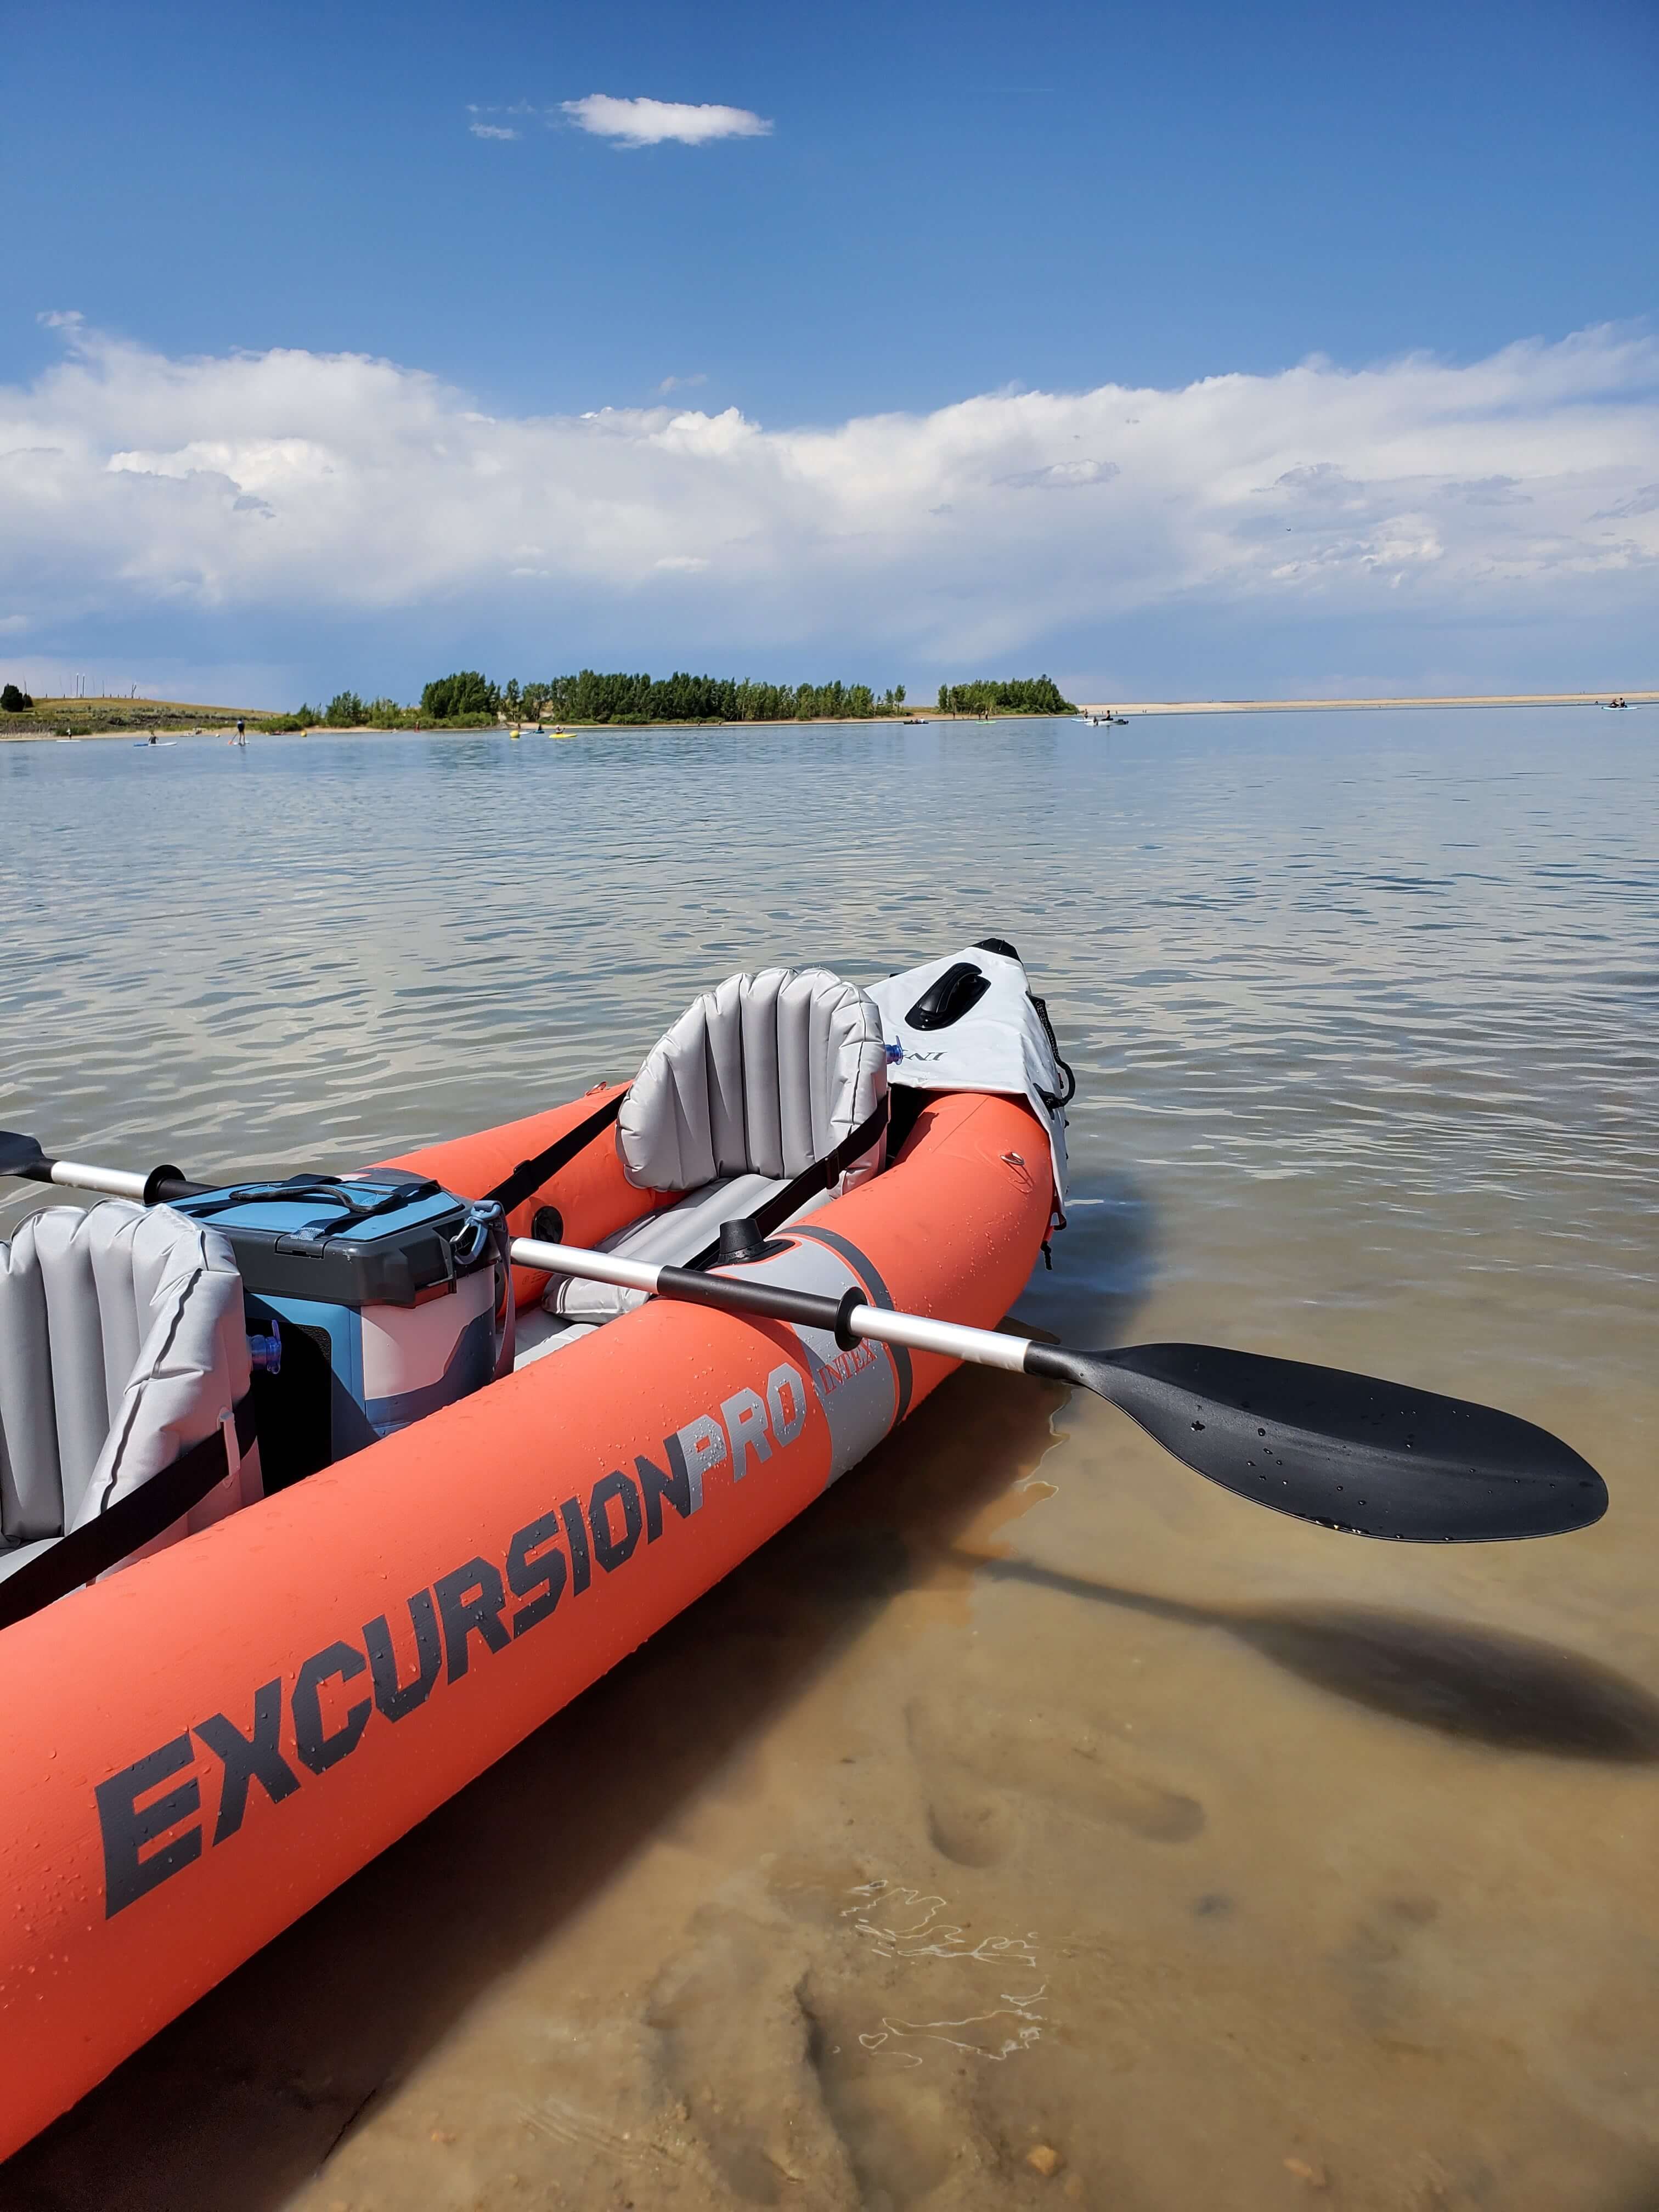 Intex Excursion Pro Kayak